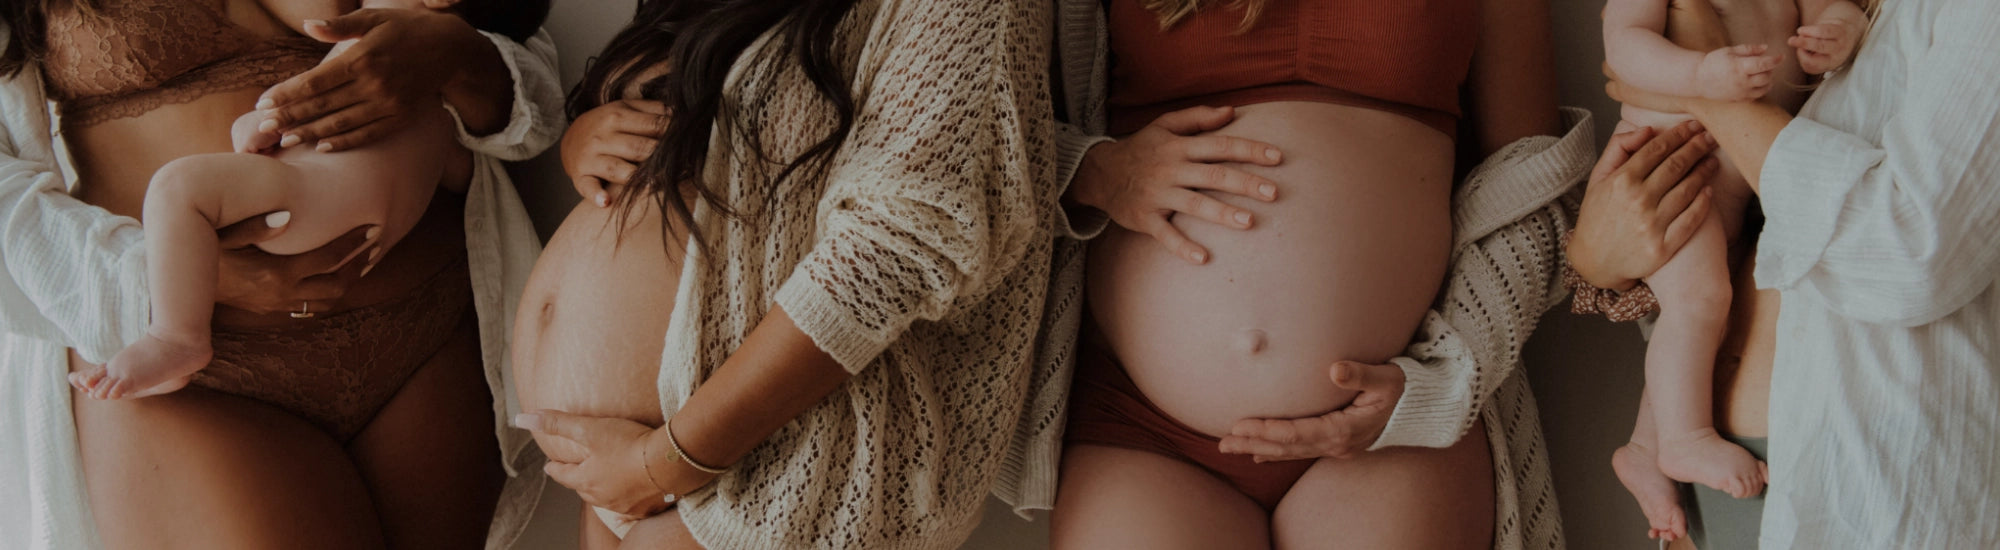 11 idées cadeaux écolo & utiles pour une femme enceinte ! – Mamazoa